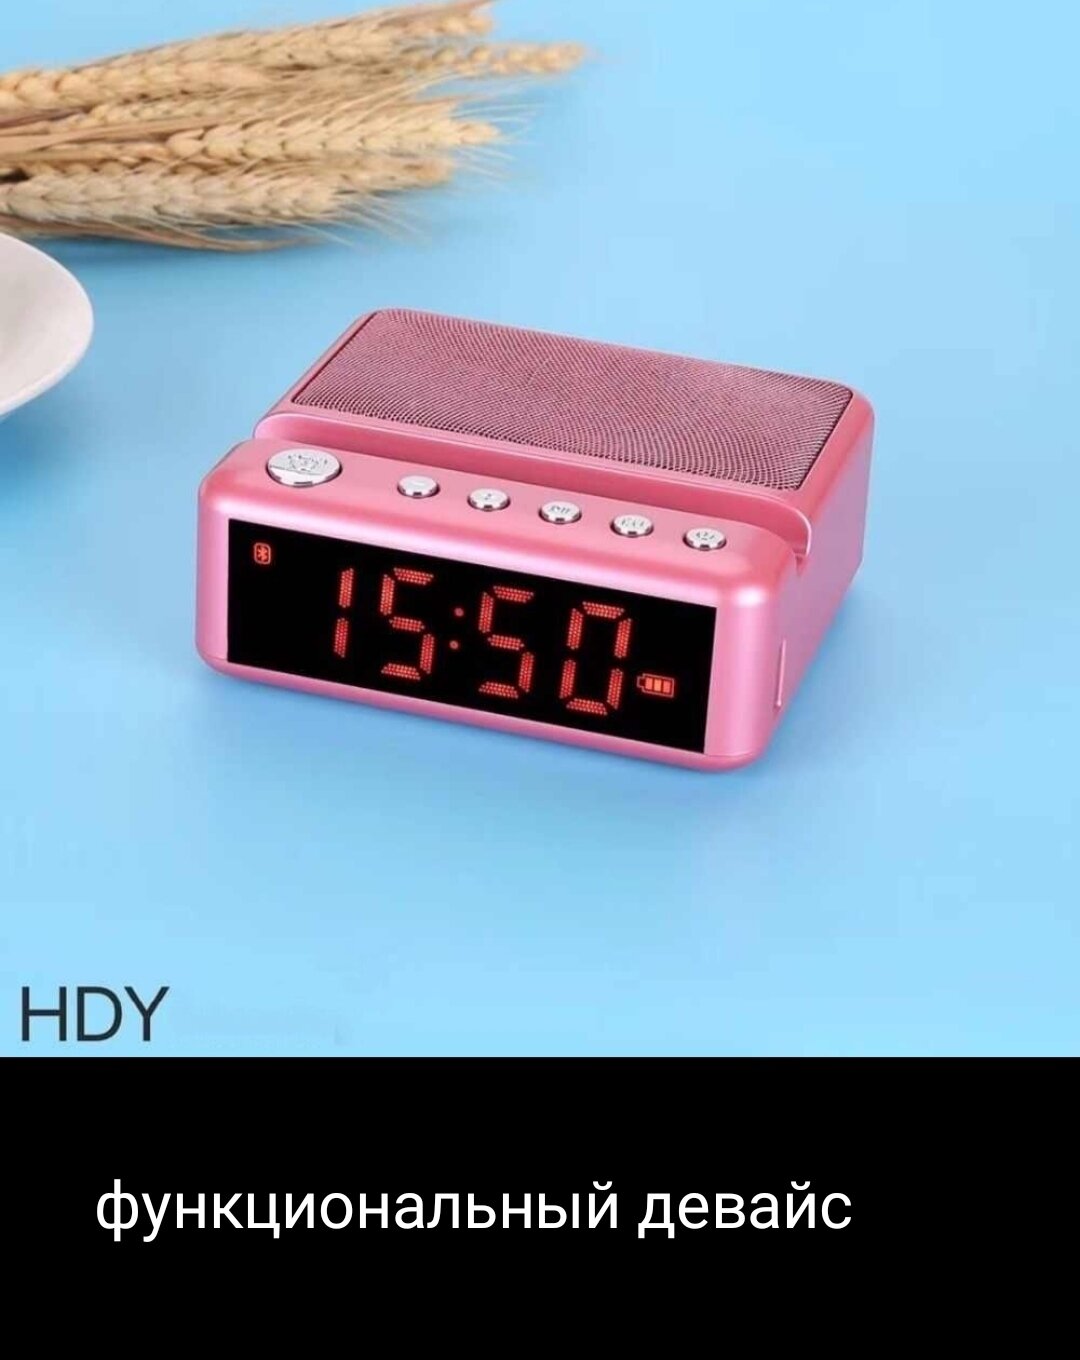 Беспроводная Bluetooth колонка с часами и подставкой под смартфон HDY pink